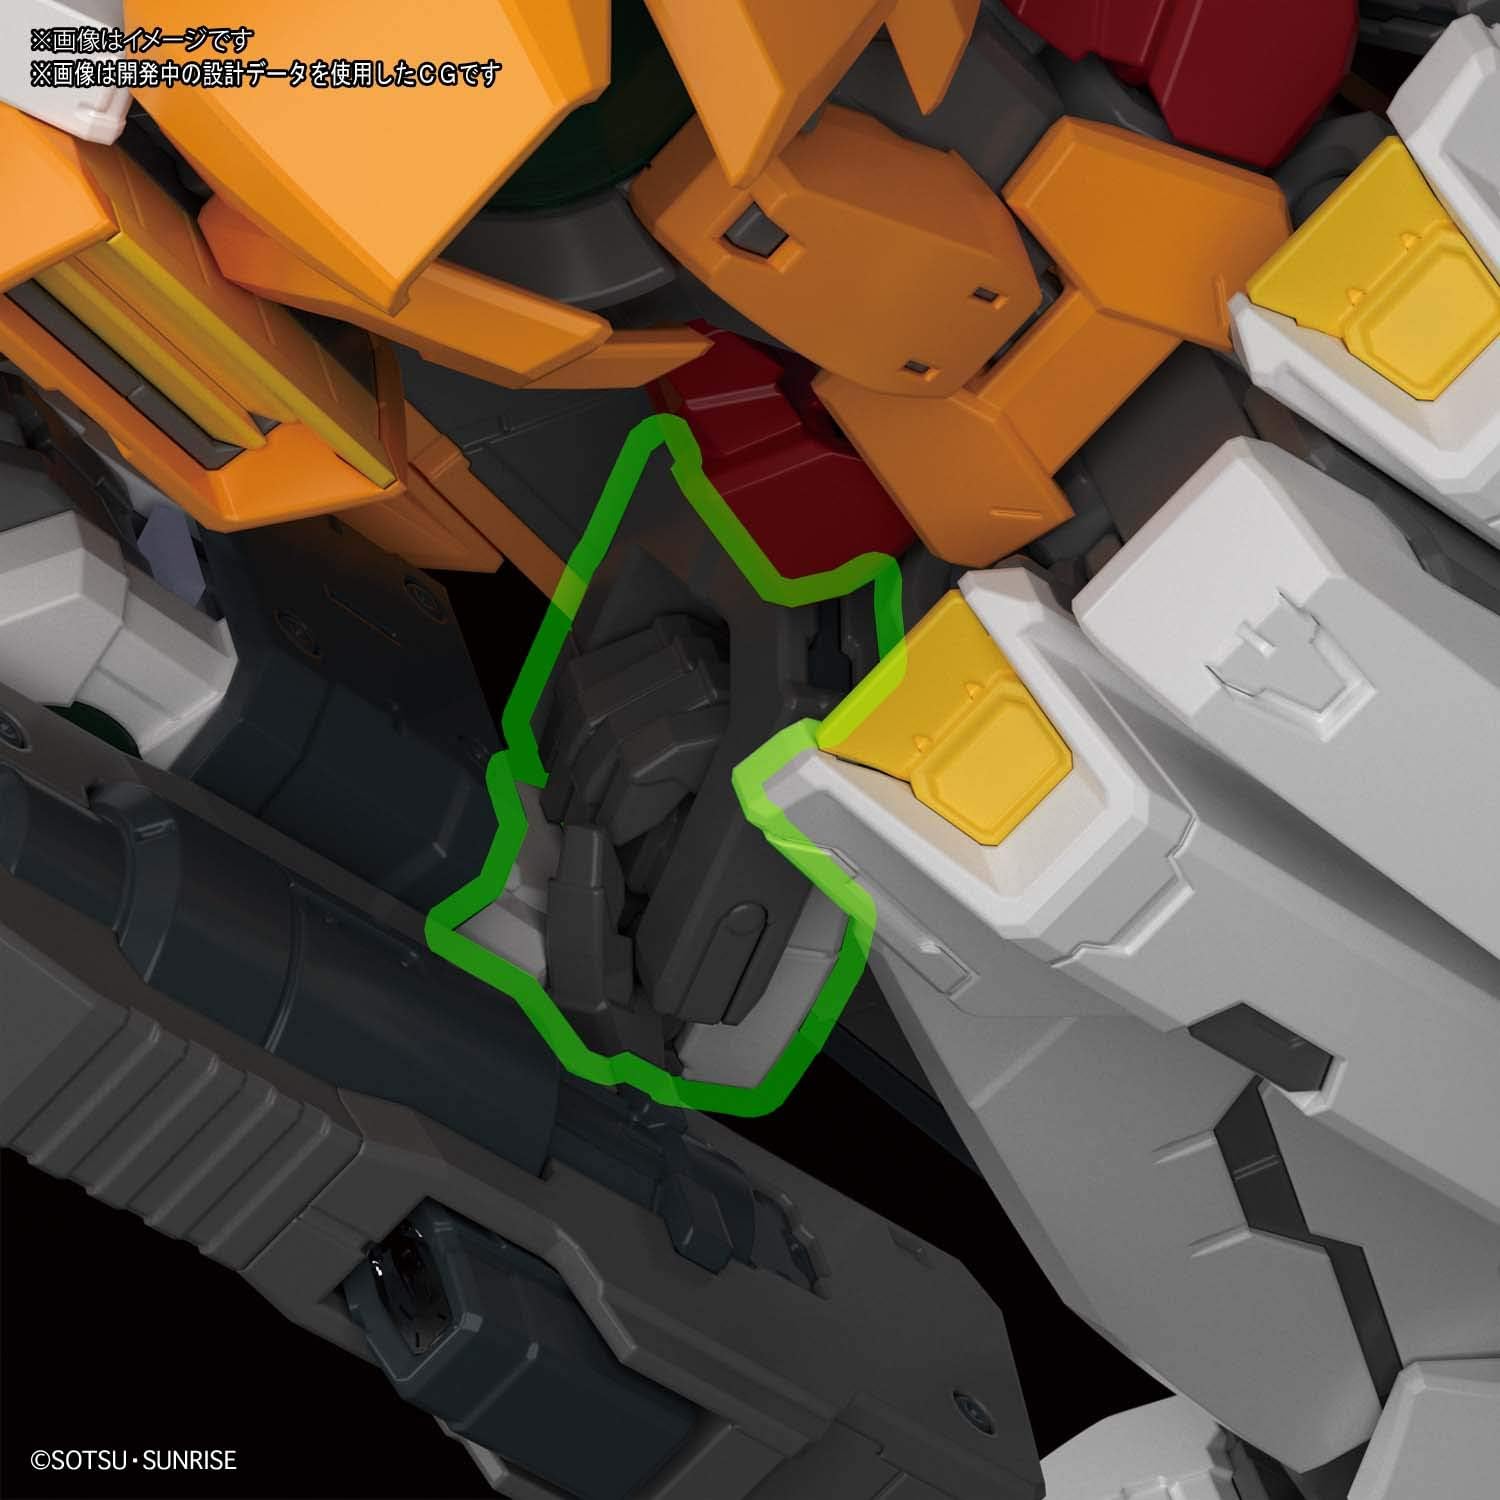 1/100 MG "Gundam 00" Gundam Kyrios | animota